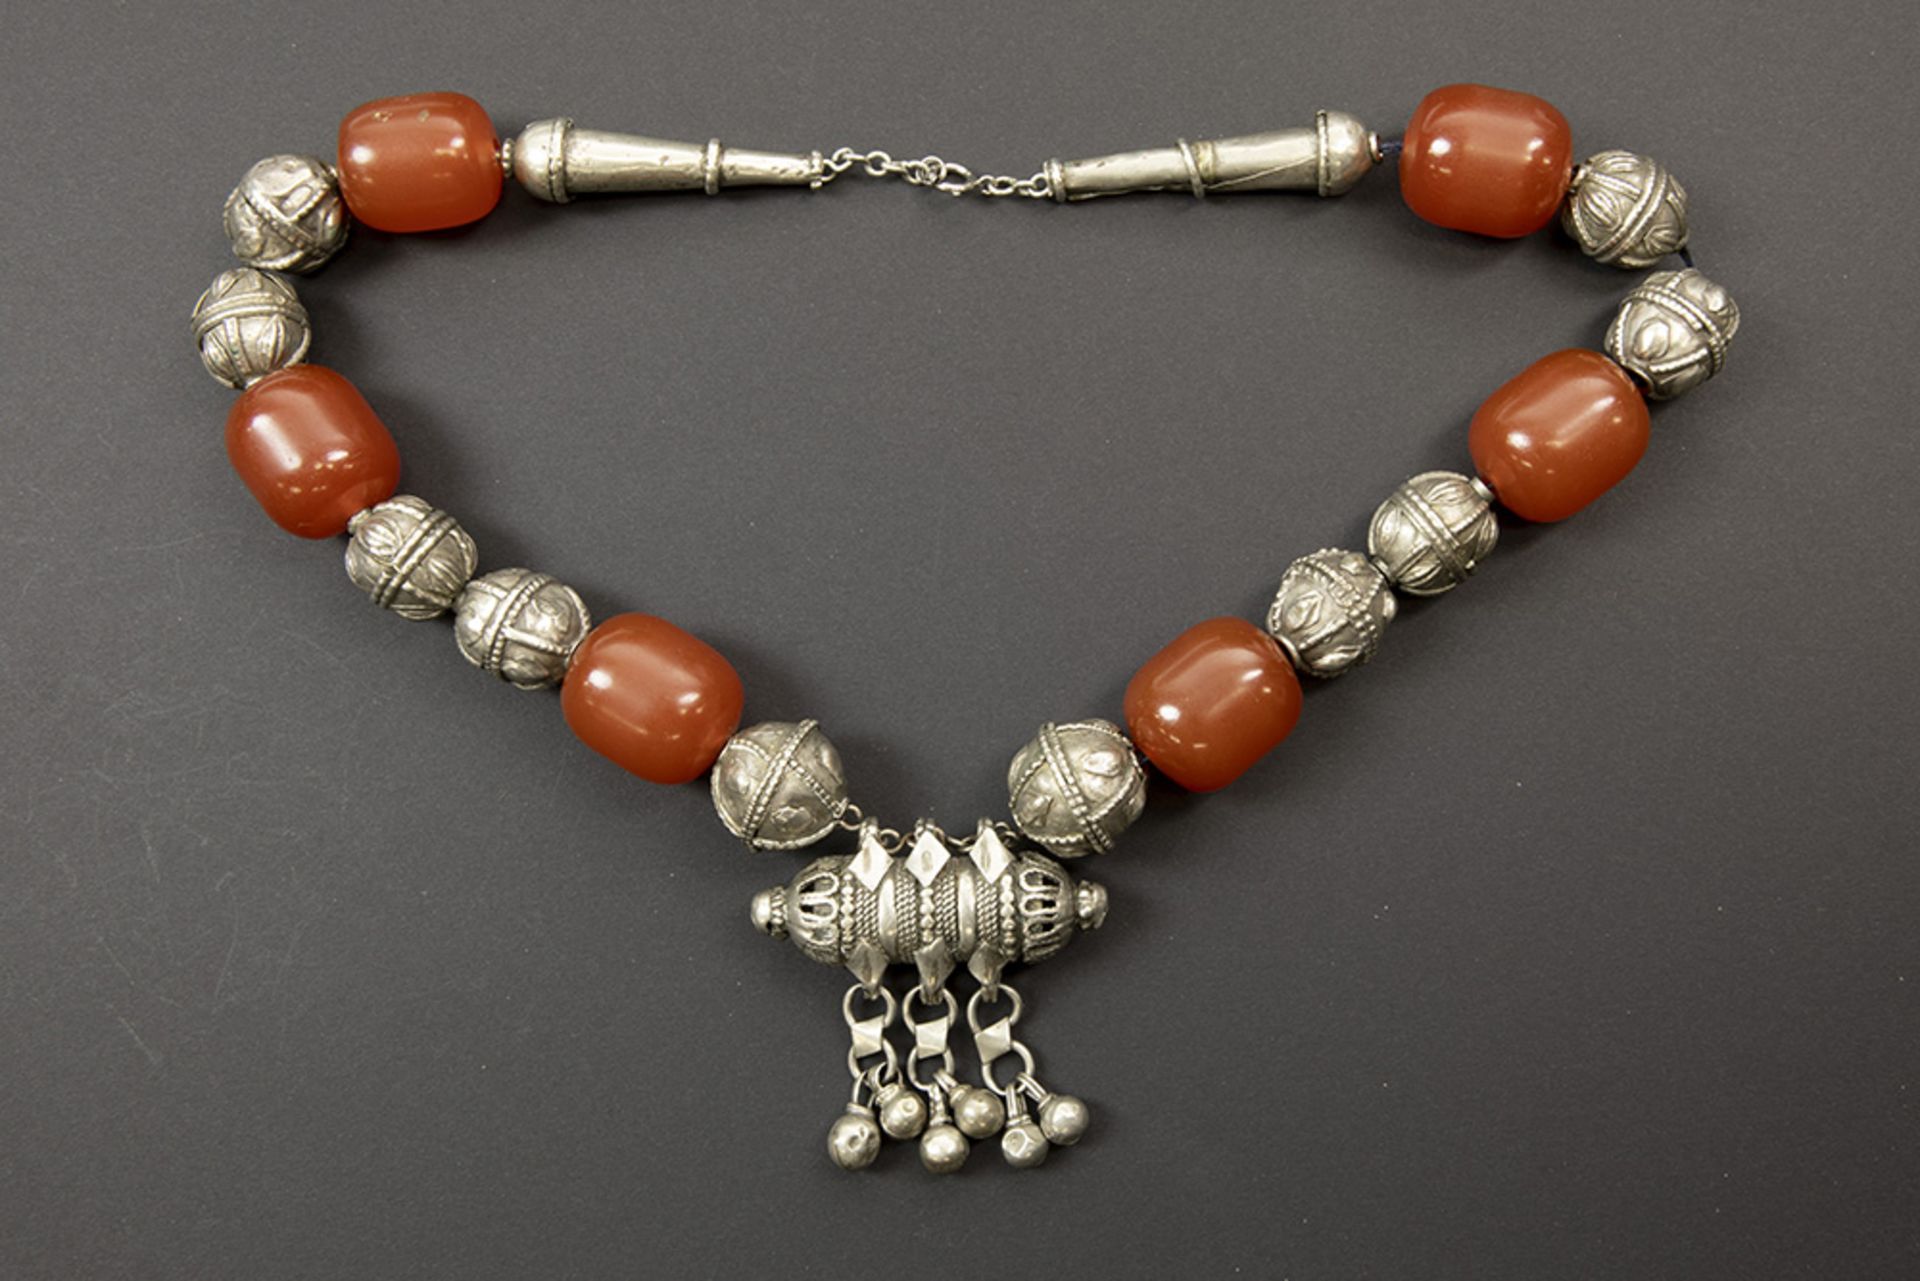 old Yemen necklace in silver with beads in amber (?) || Oude Jemenitische halsband in zilver met